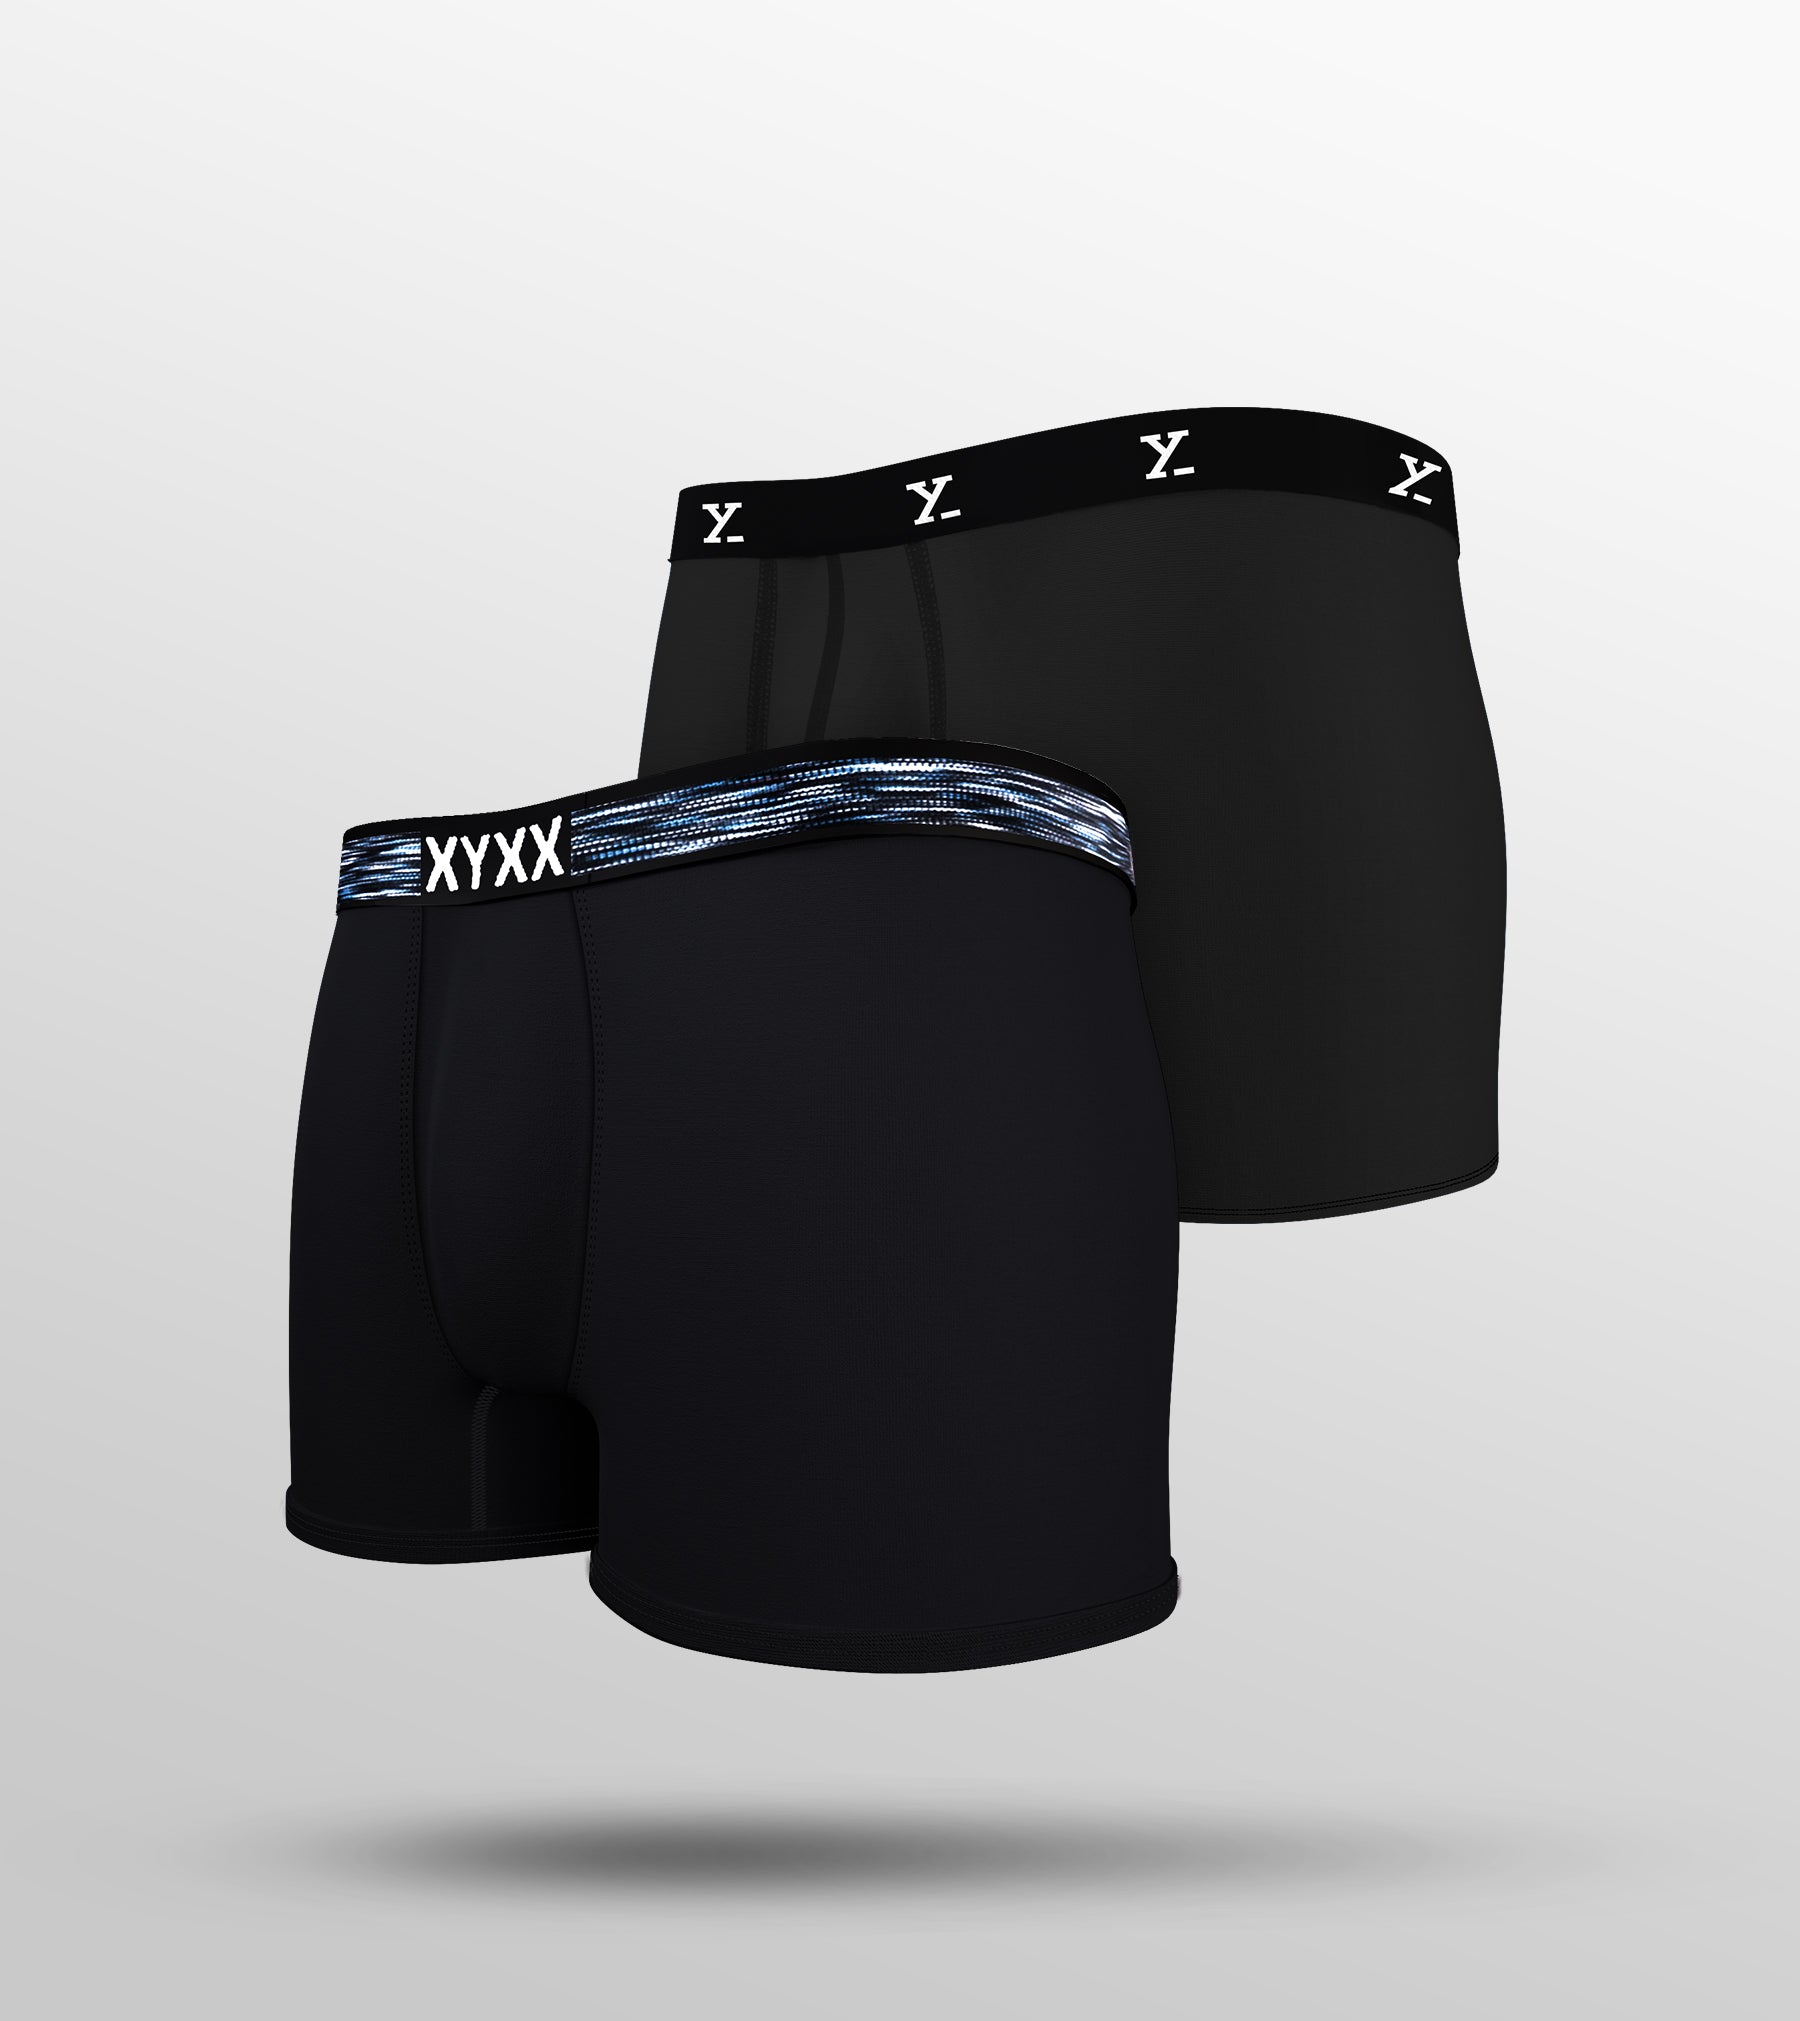 Tencel Modal Trunks For Men Pack of 2 (All Black) -  XYXX Mens Apparels